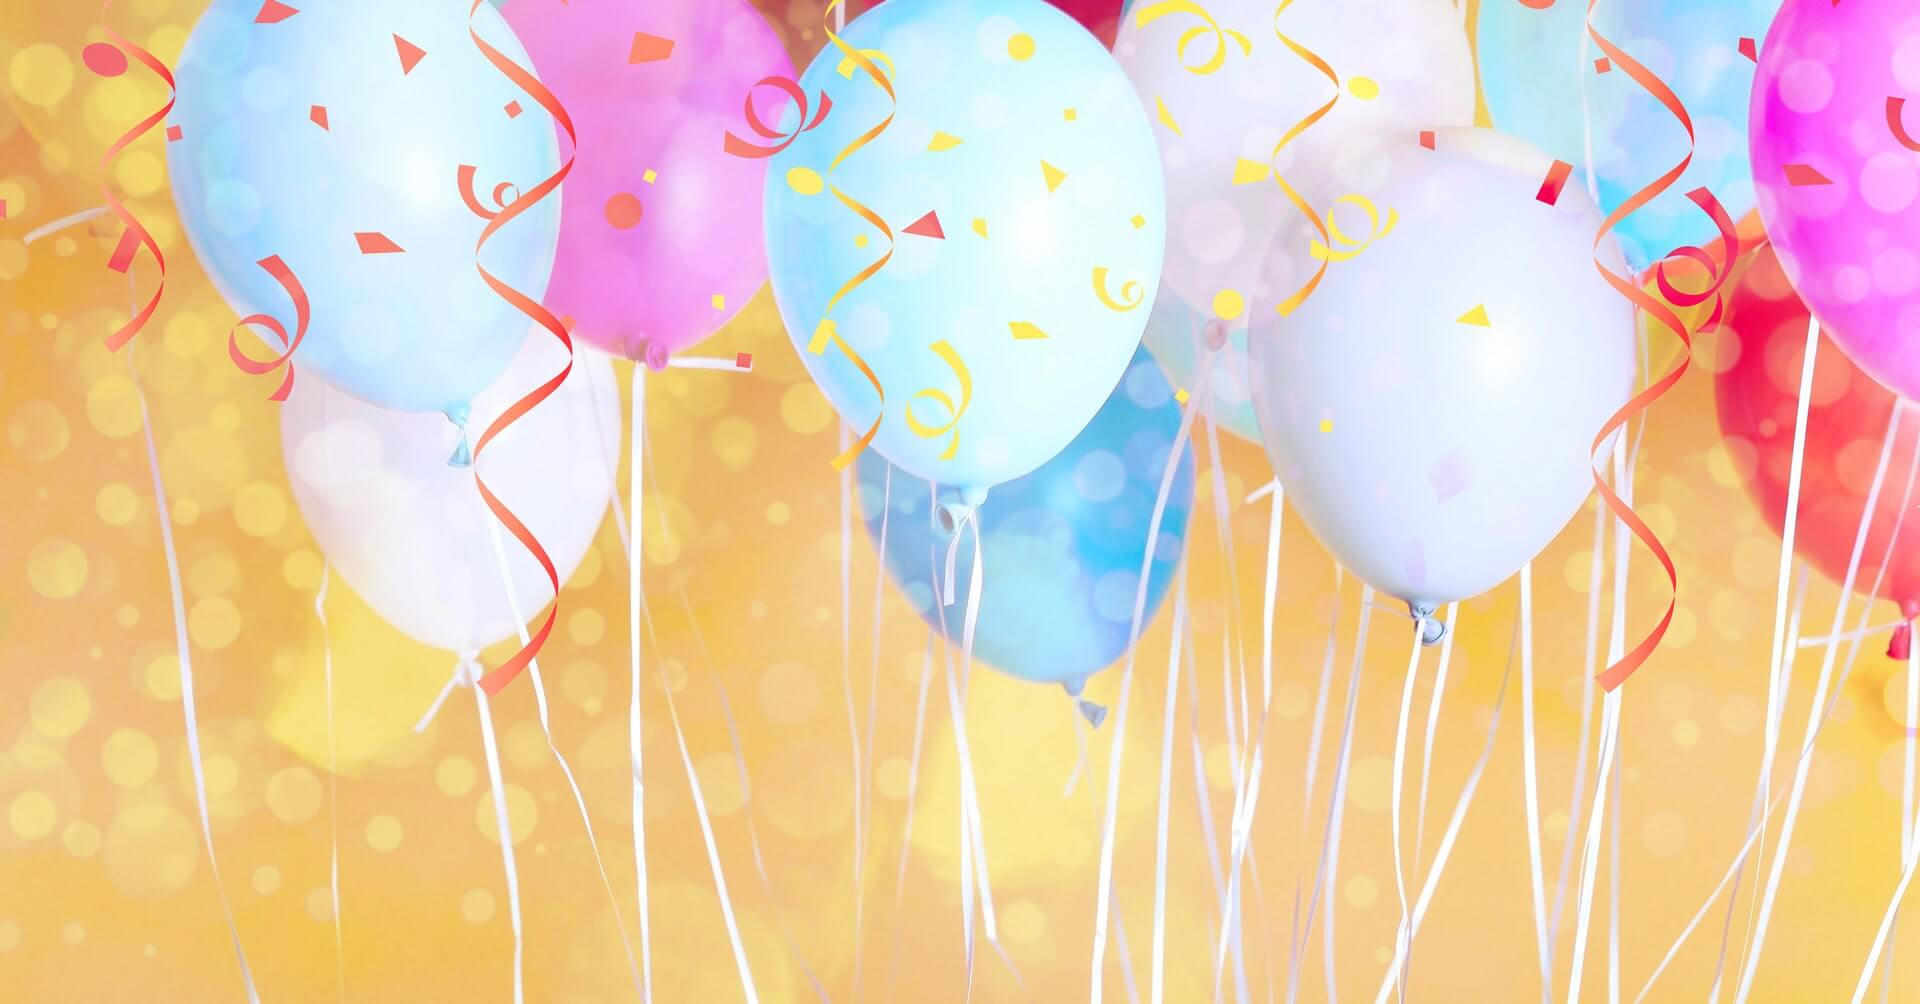 Ballon Papillon Helium - déco anniversaire enfant